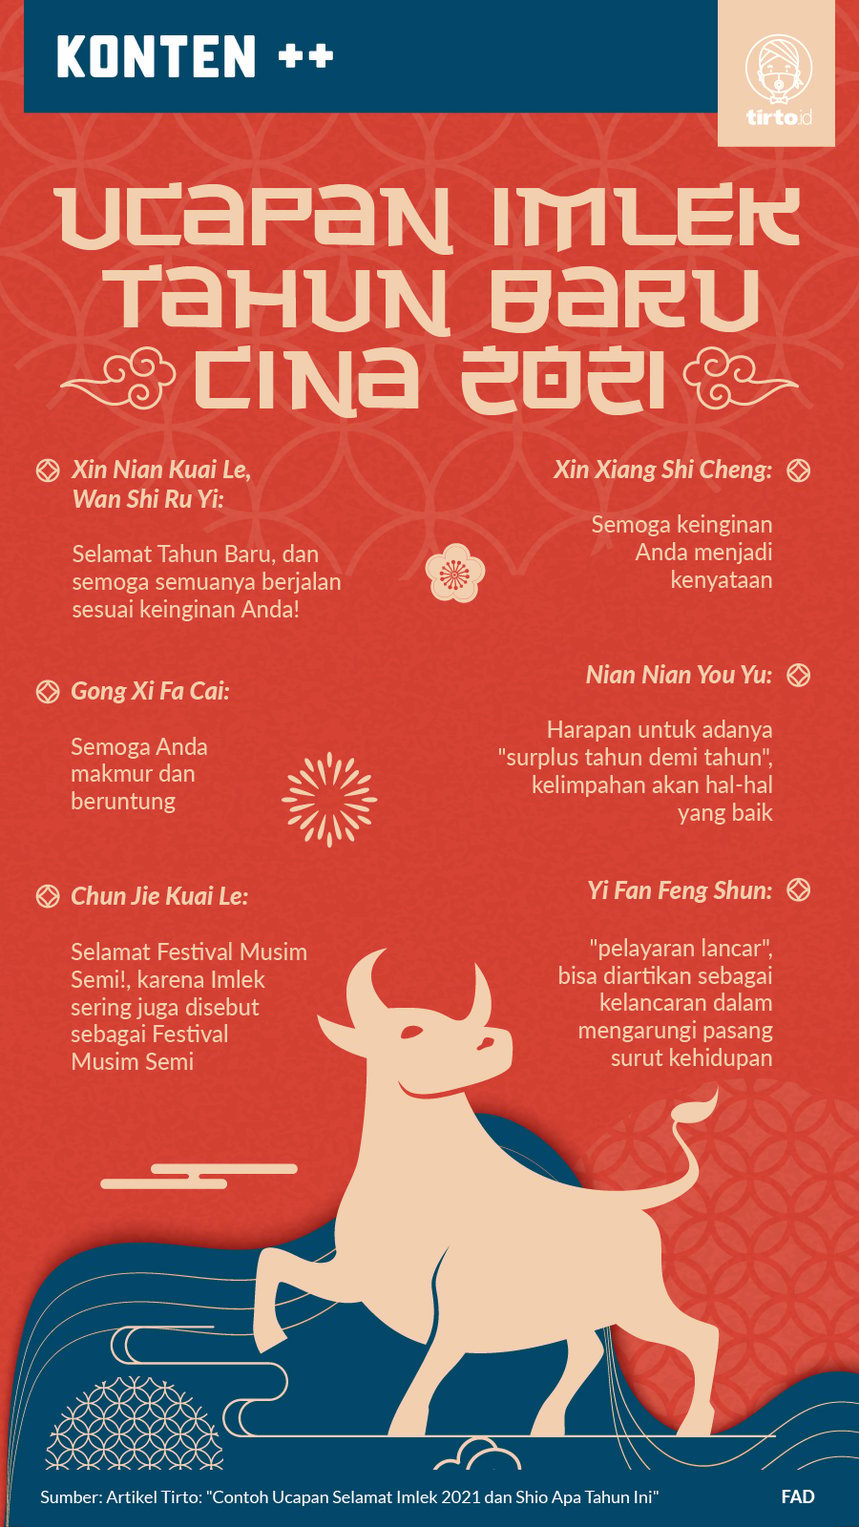 Contoh Ucapan Selamat Imlek 2021 dan Shio Apa Tahun Ini